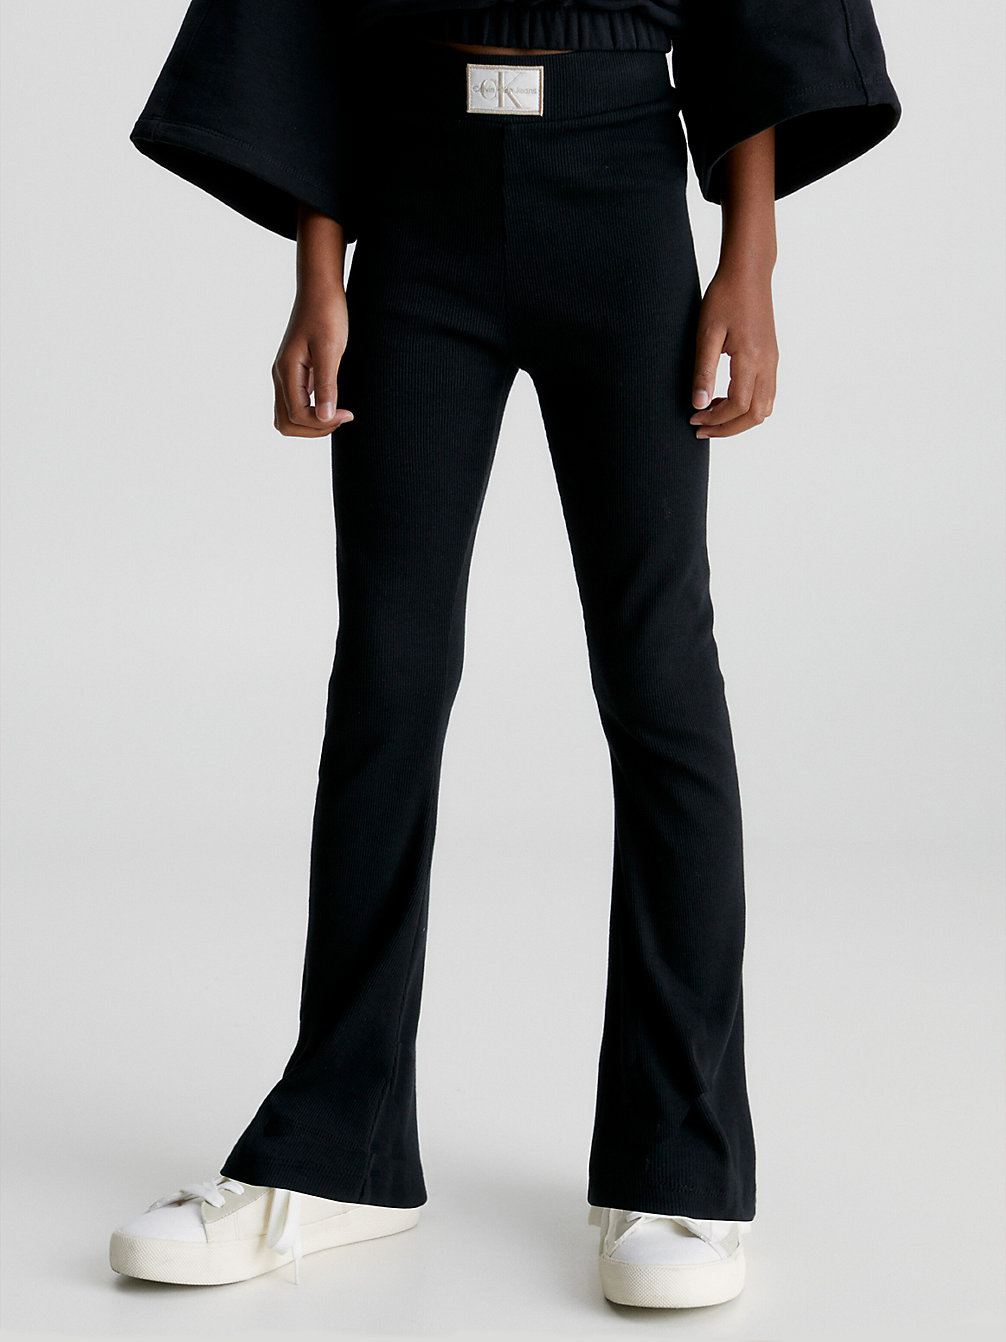 CK BLACK > Rozszerzane Spodnie O Ściągaczowym Splocie > undefined Dziewczynki - Calvin Klein